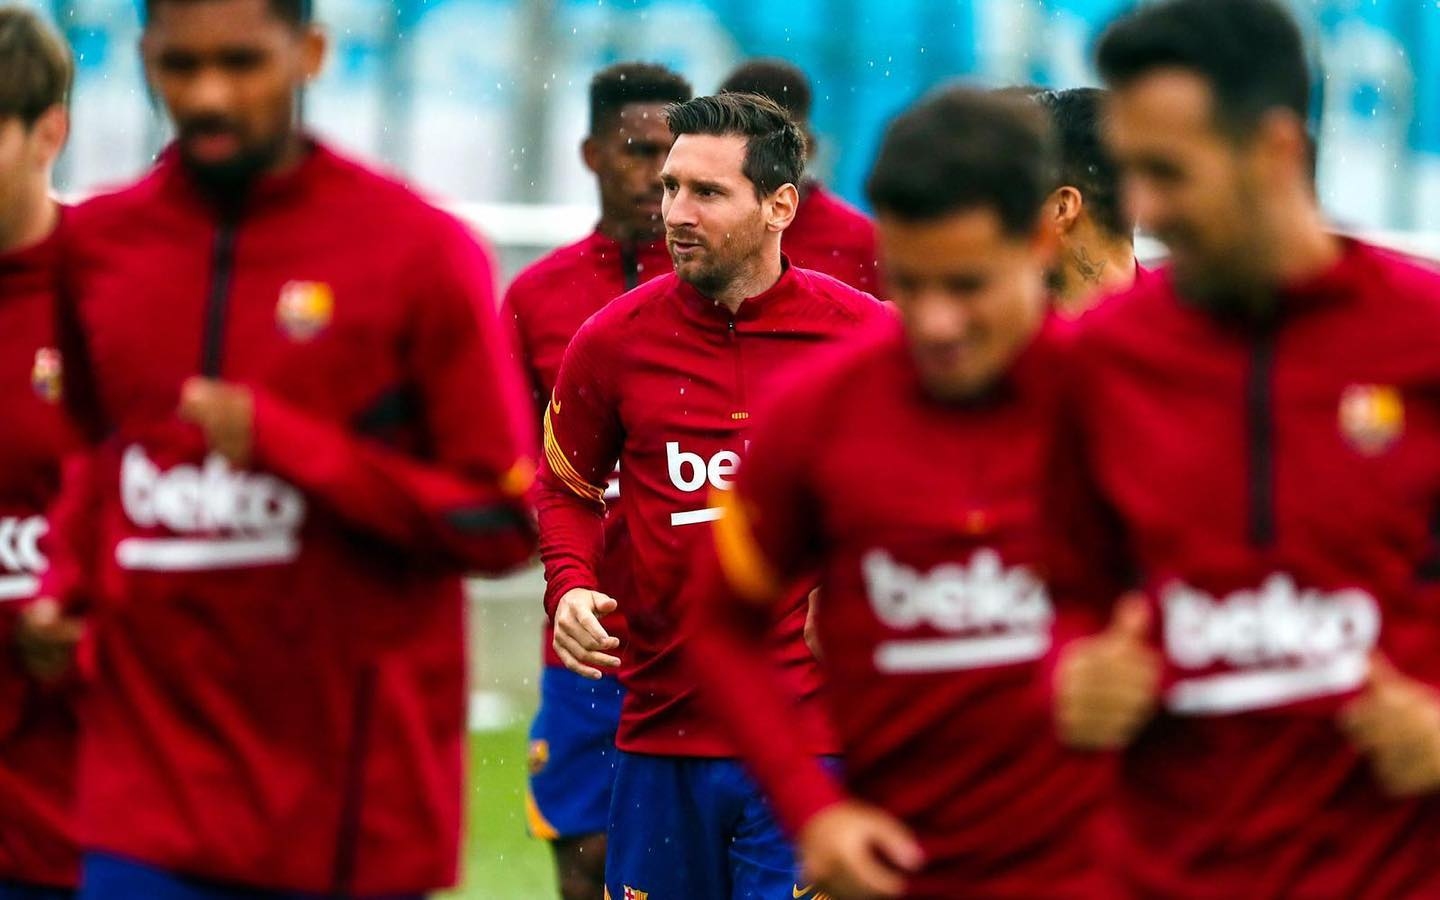 Капитанът на Барселона Лионел Меси днес направи първа групова тренировка